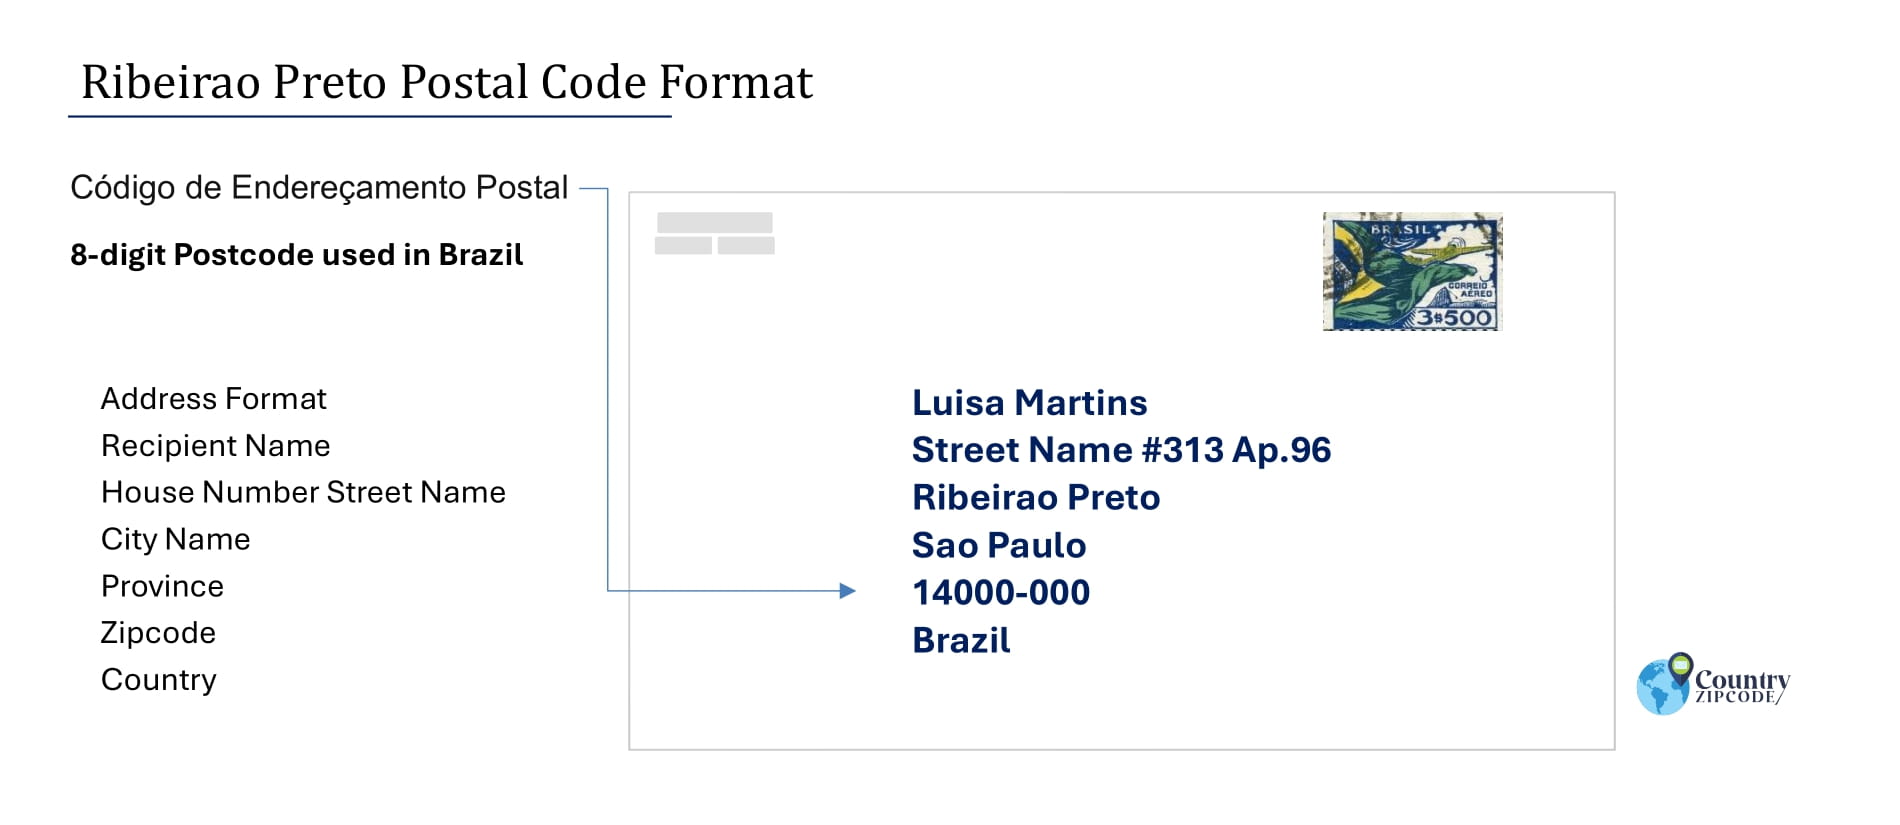 Example of Codigo de Enderecamento Postal and Address format of Ribeirao Preto Brazil